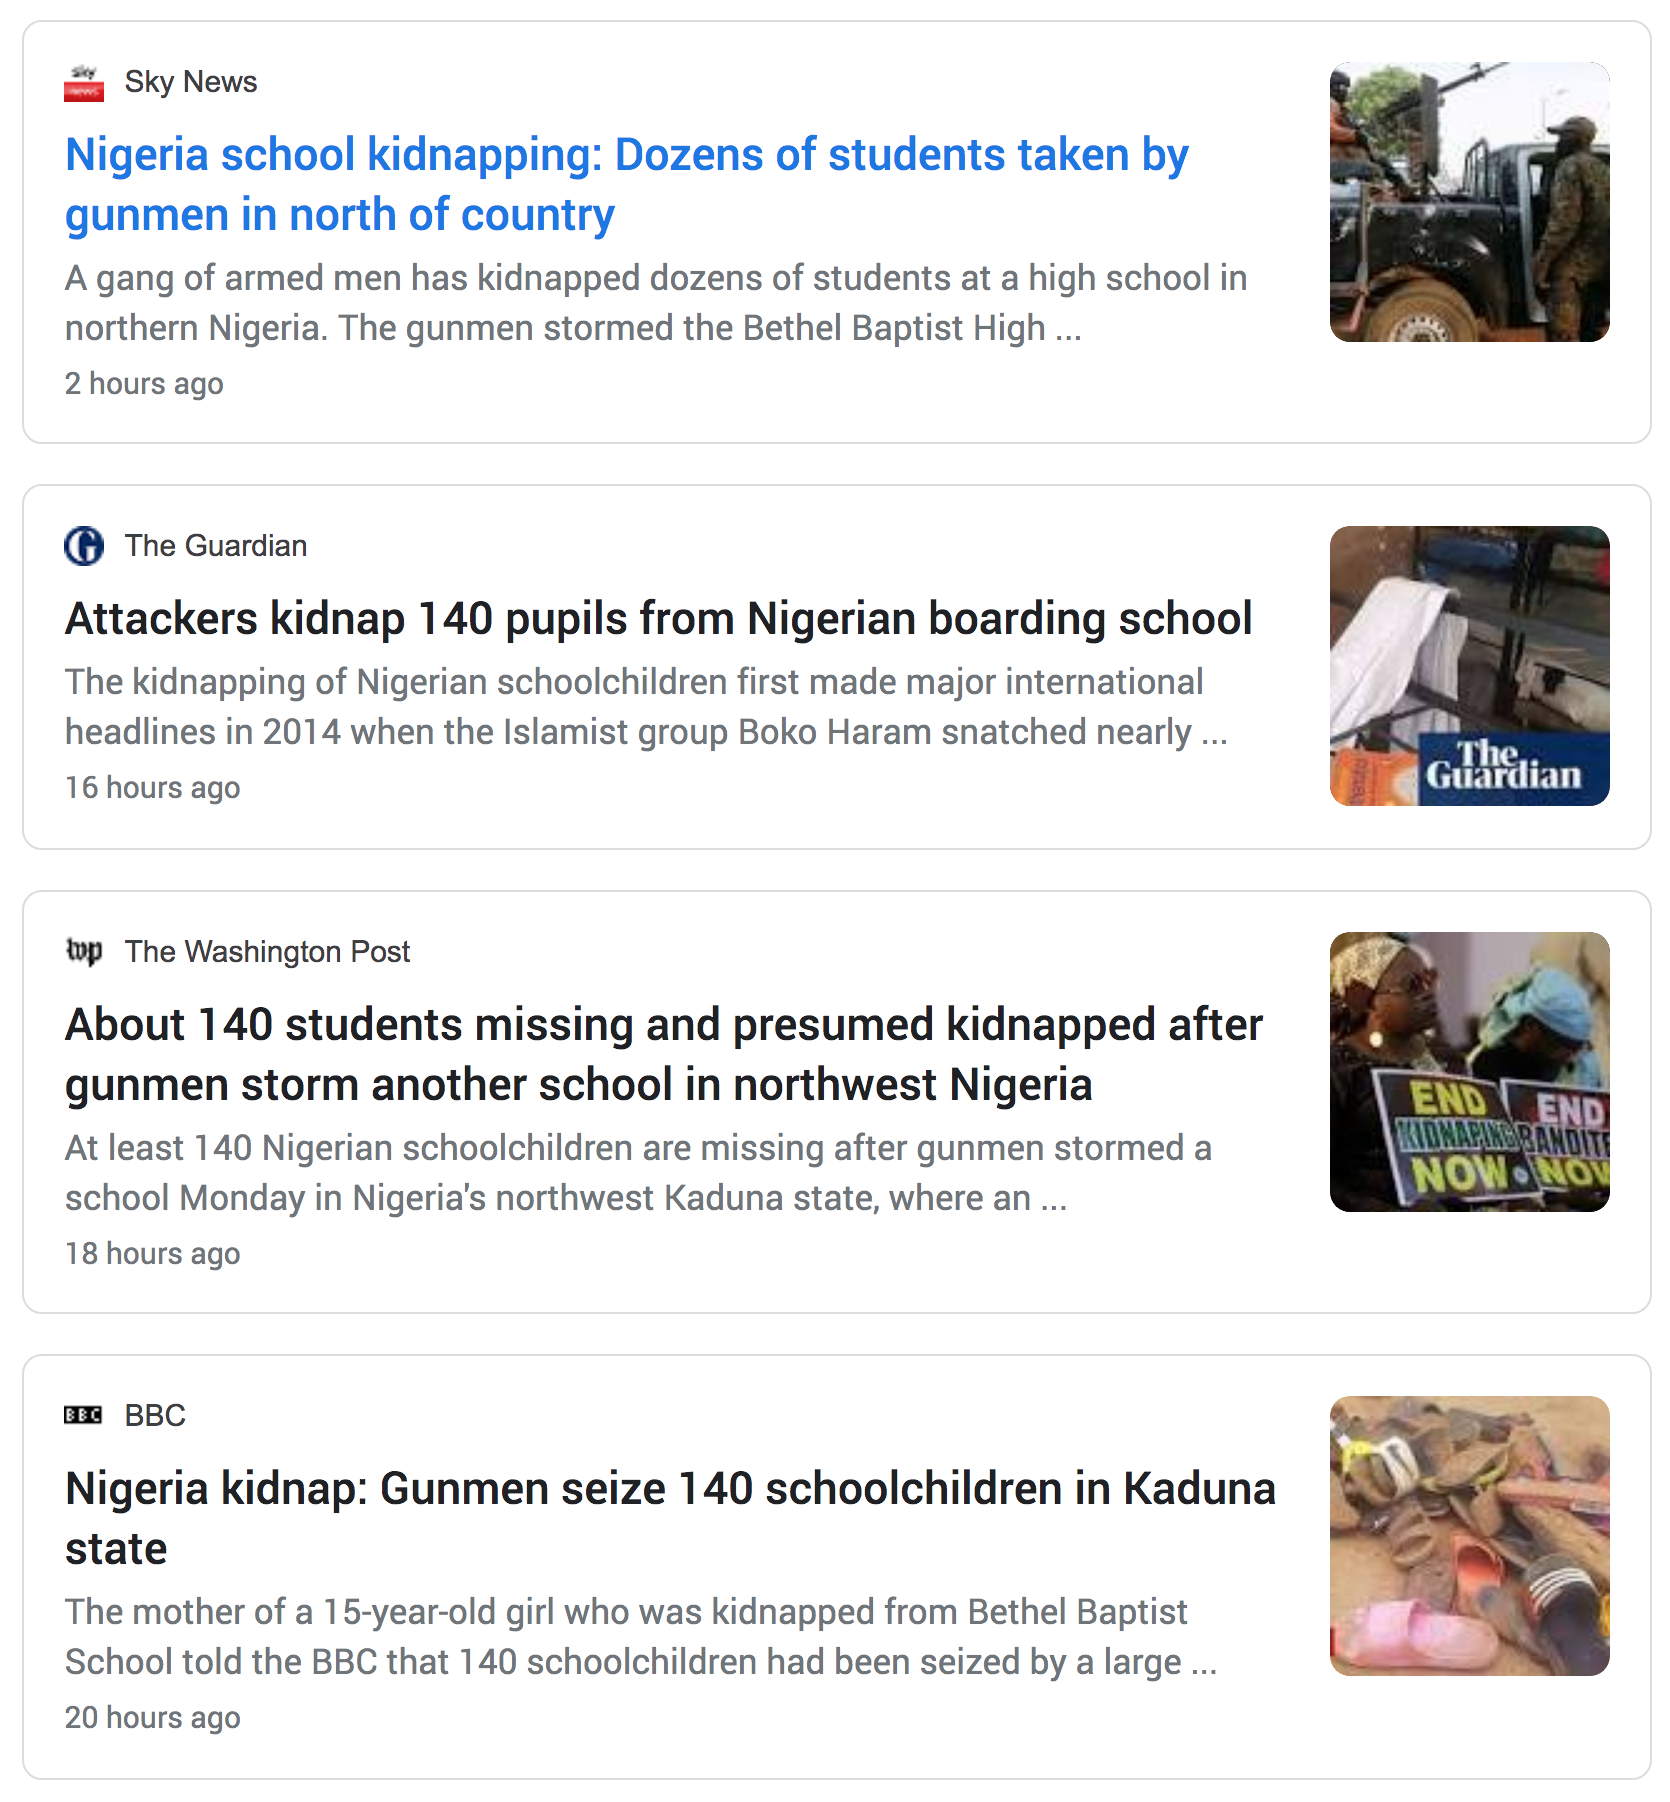 Nigeria kidnap graphic